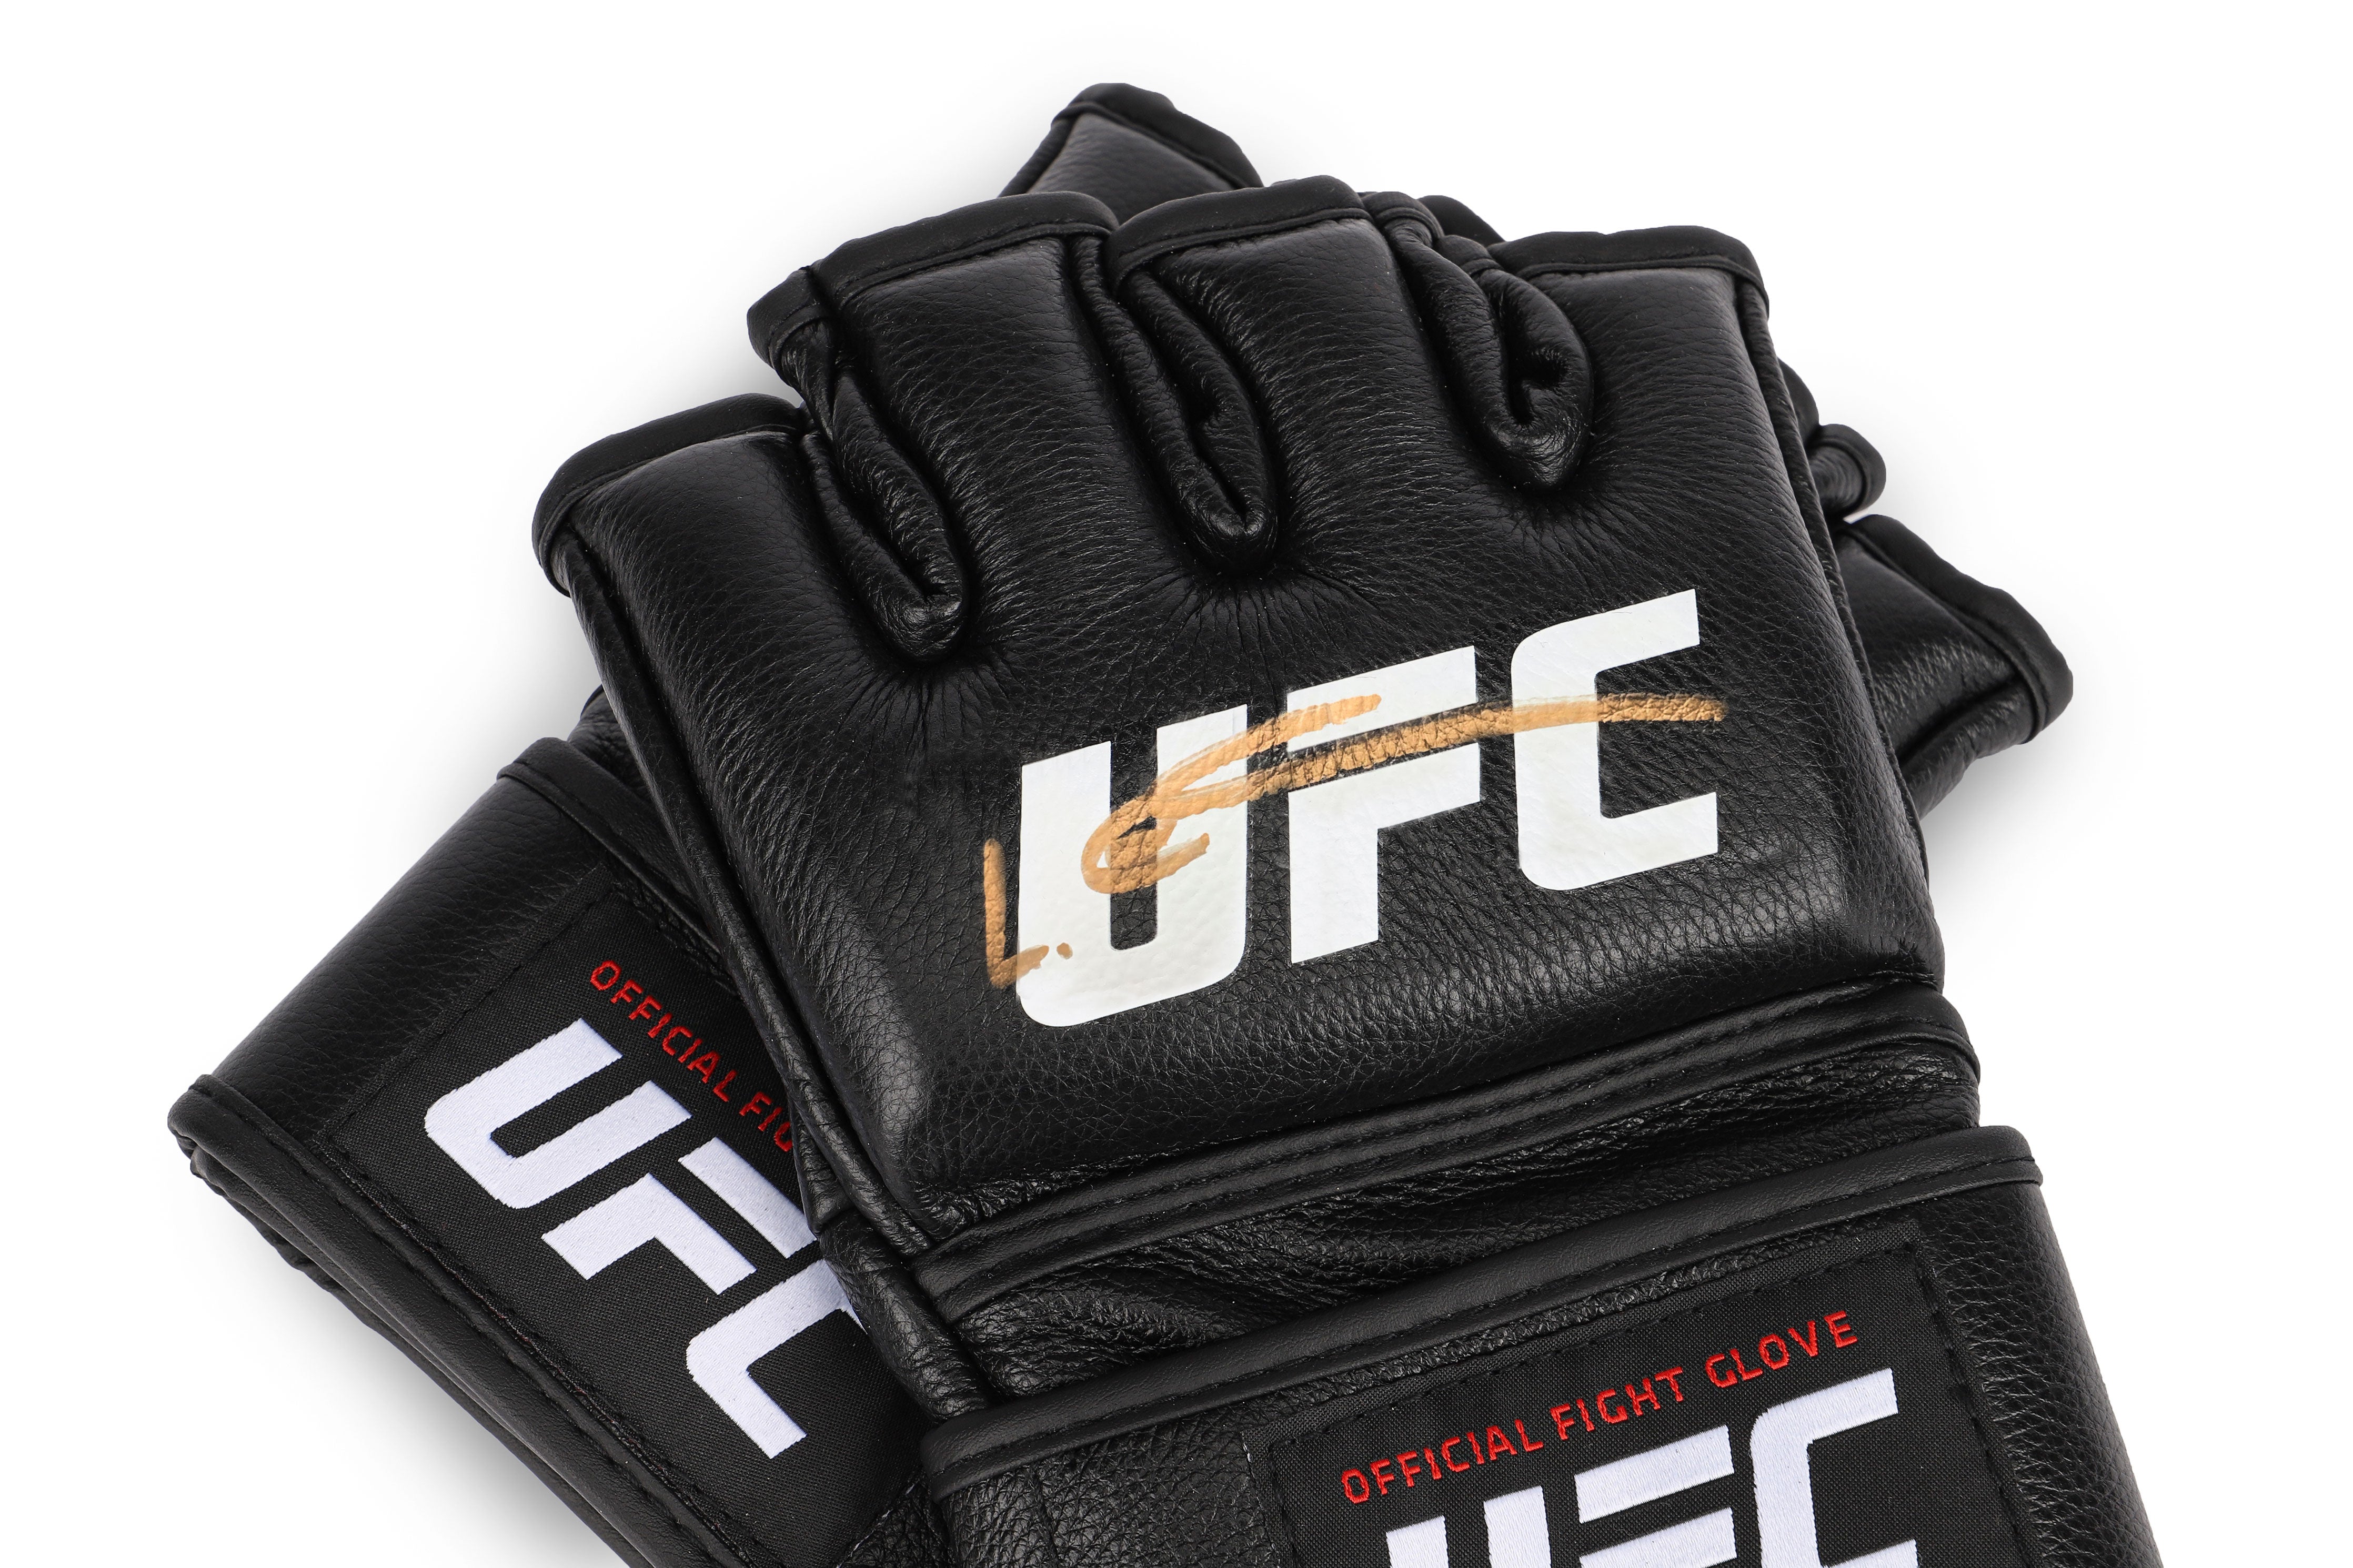 Leon Edwards Signed Official UFC Gloves